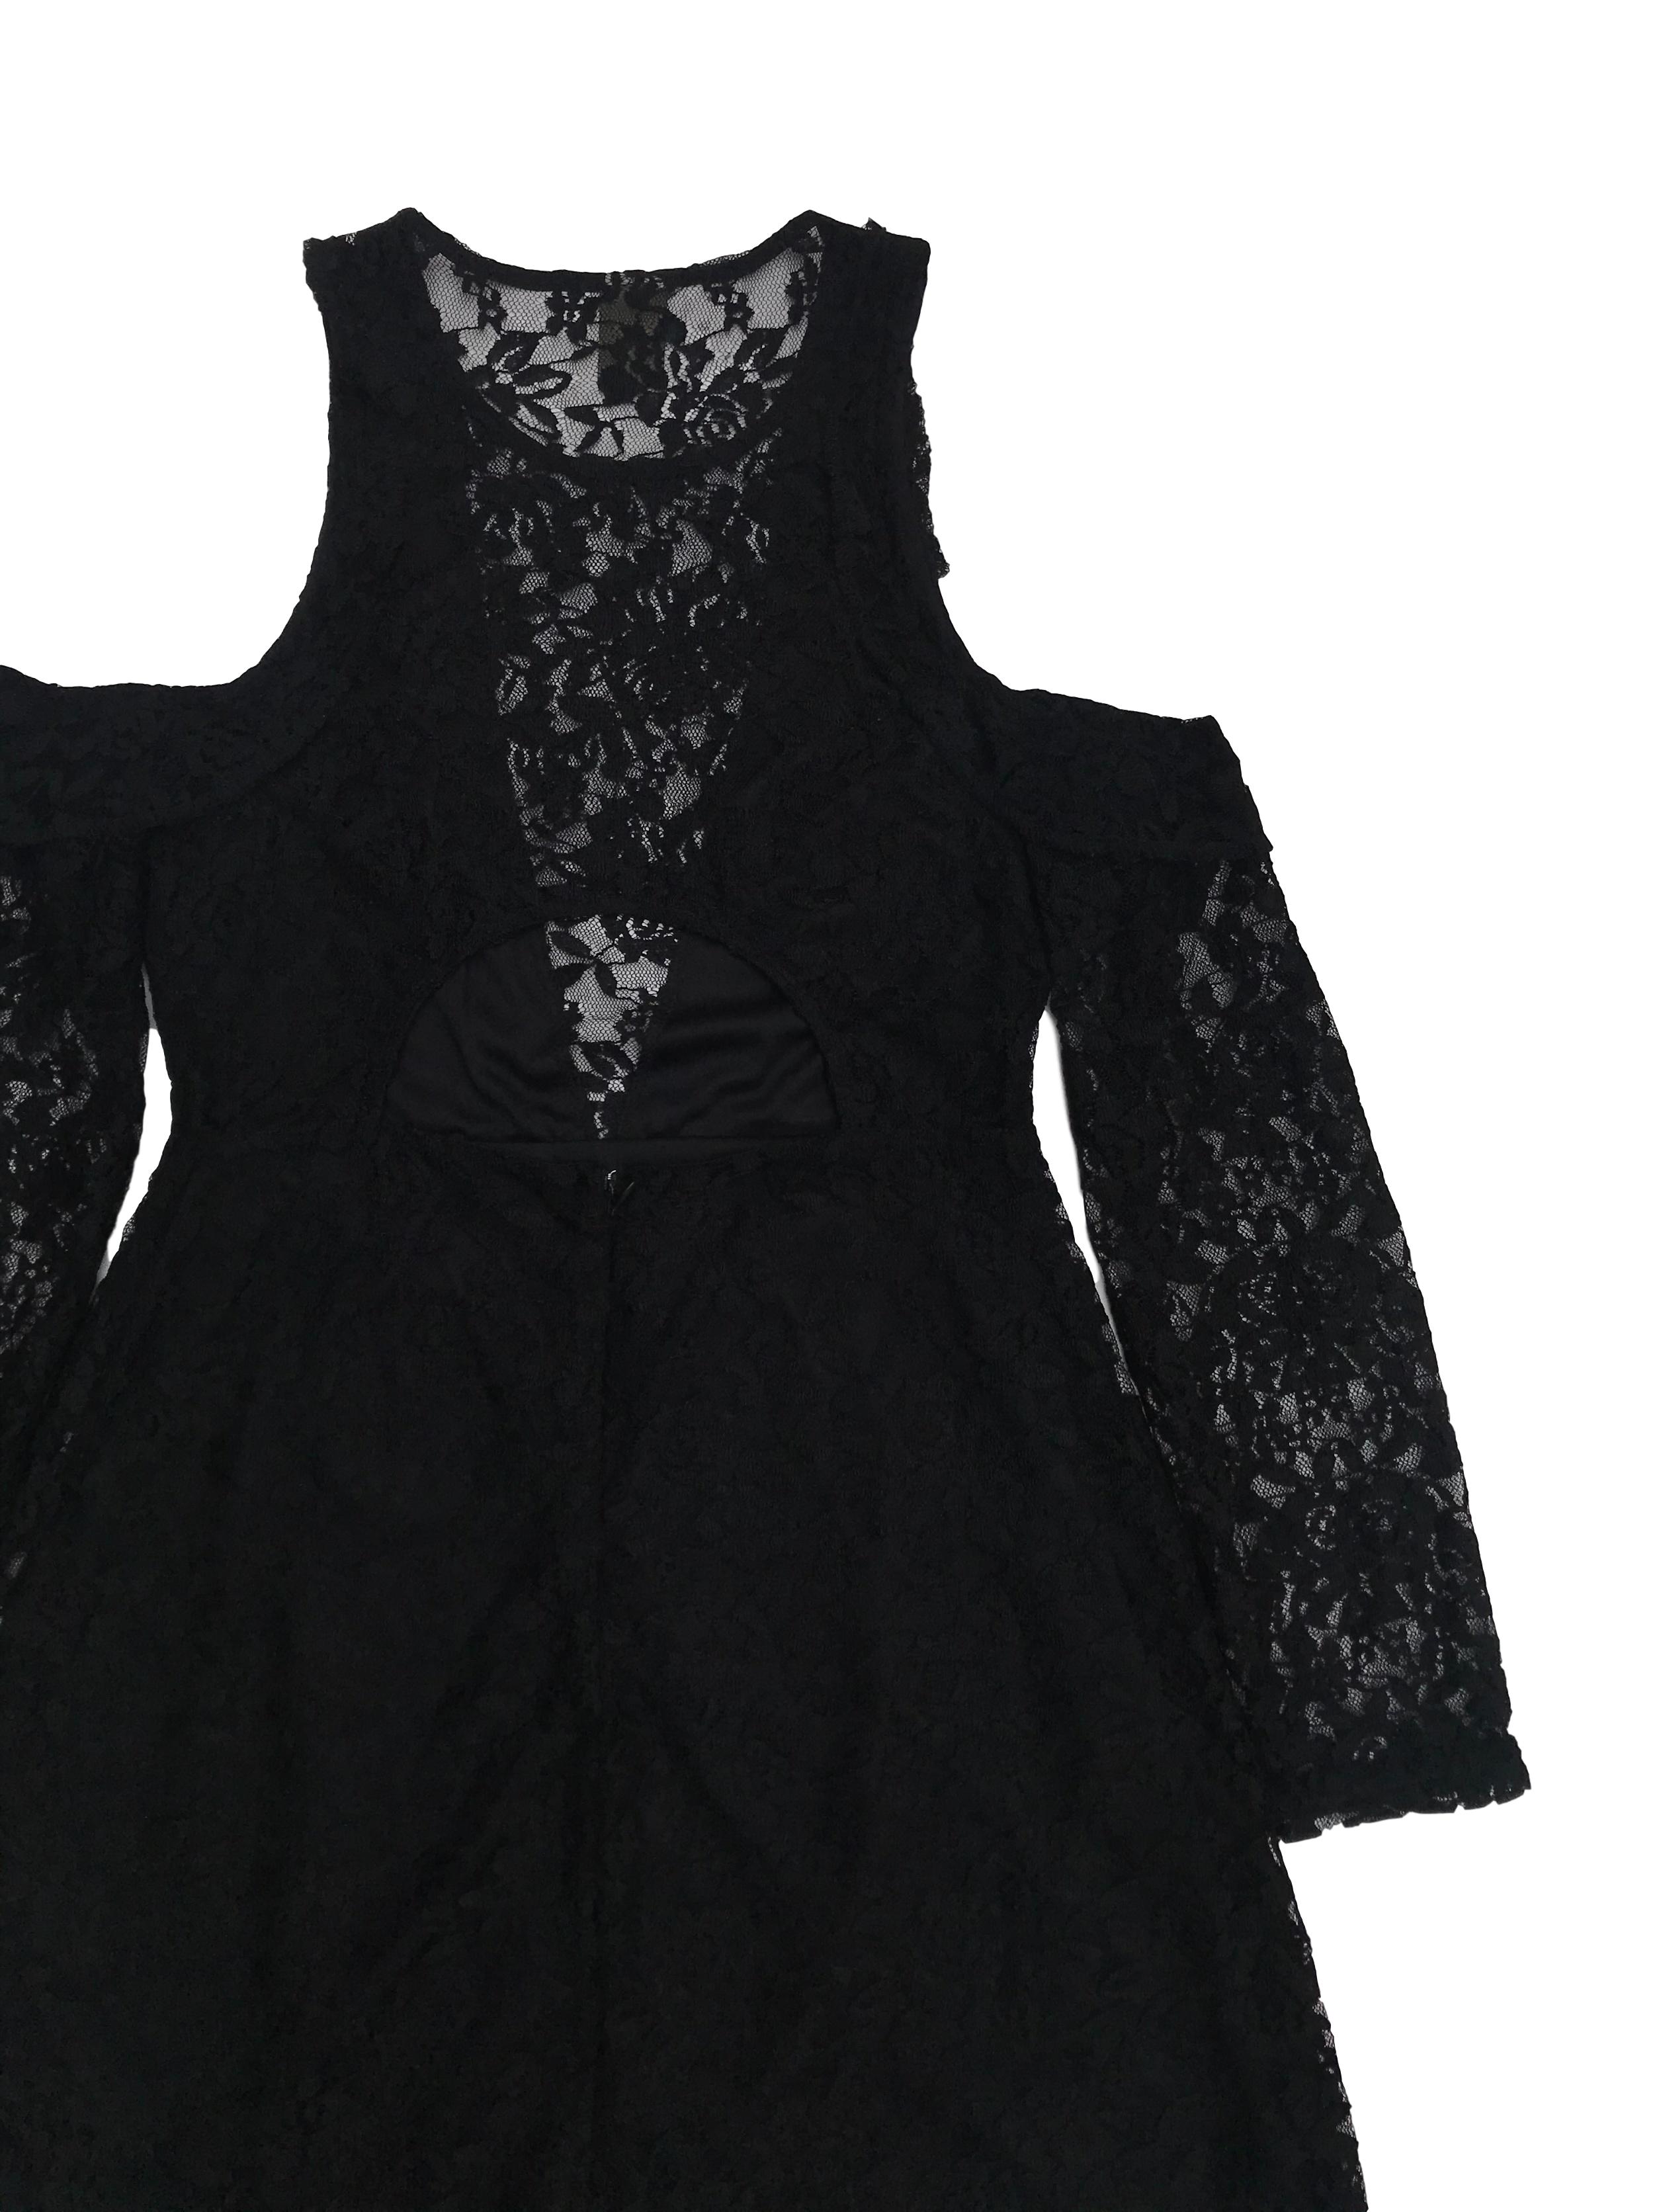 Vestido Index de encaje negro con aberturas en los hombros, cierre y escote posterior, falda en A, forrado. ¡Muy lindo! Largo 83cm